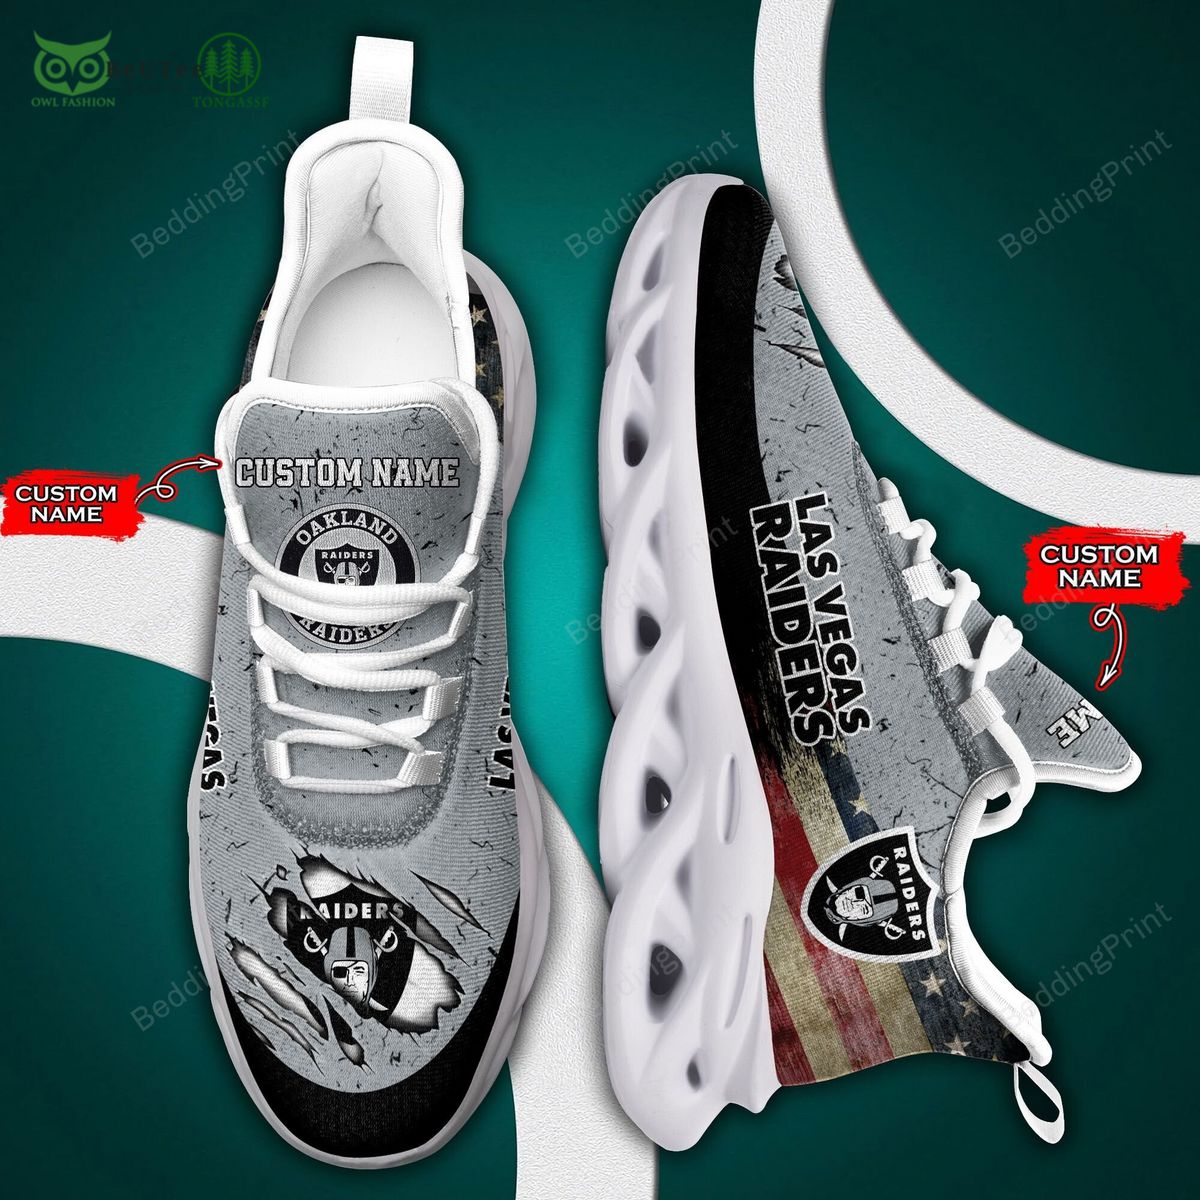 las vegas raiders nfl premium personalized max soul shoes 1 Cyzha